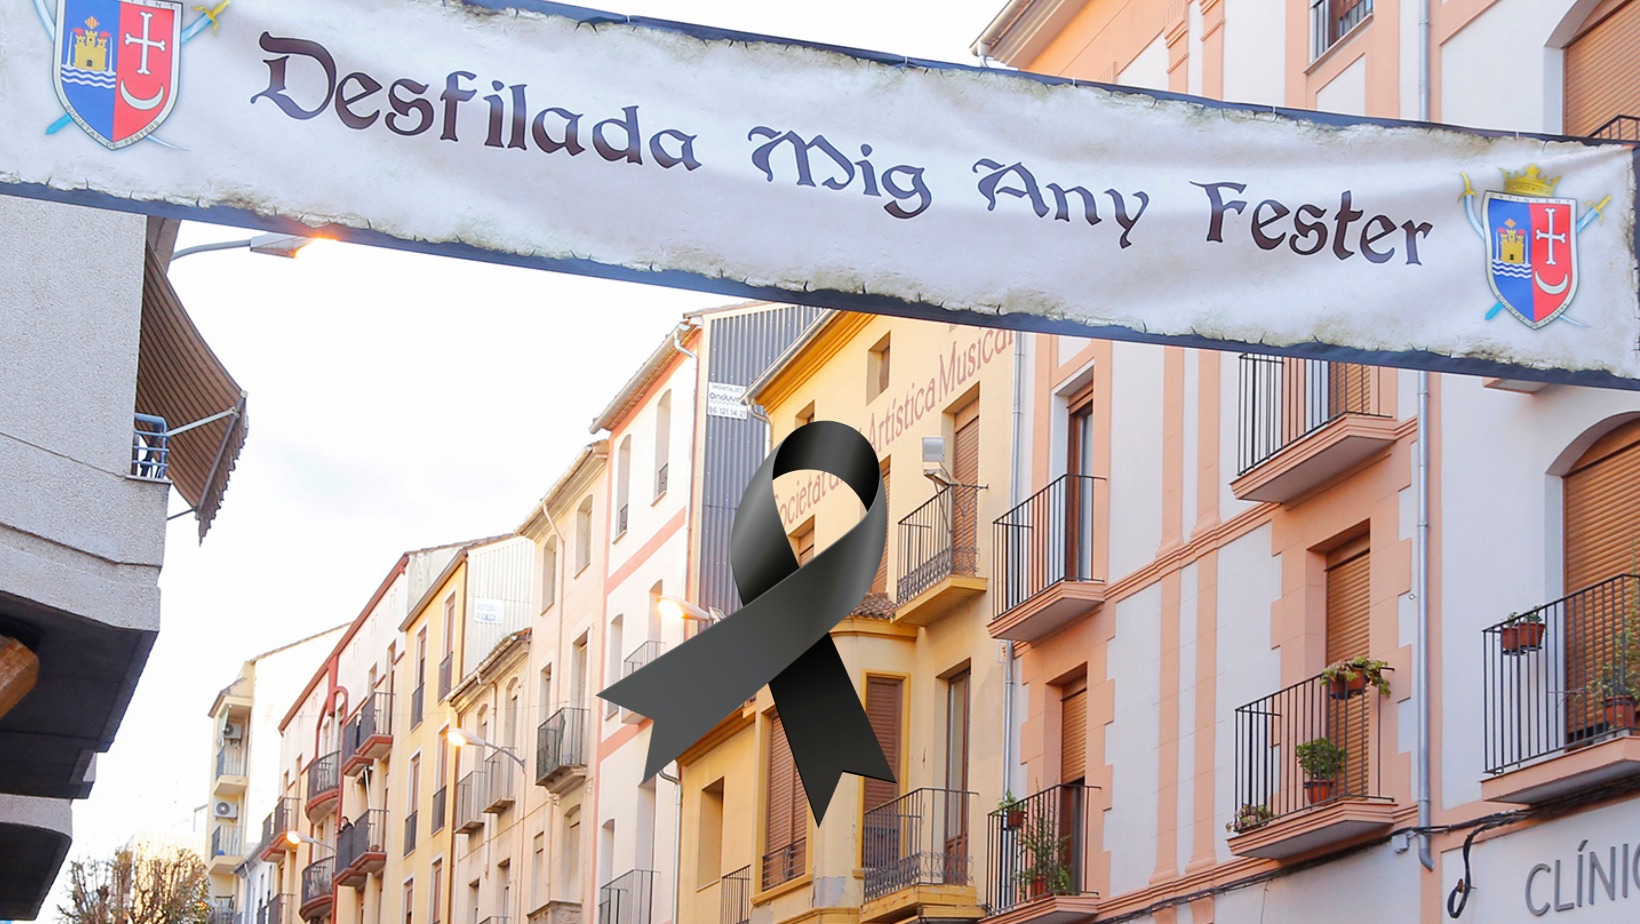 OFICIAL: Aplazado el Medio Año Fester por la tragedia de Valencia El Periódico de Ontinyent - Noticias en Ontinyent